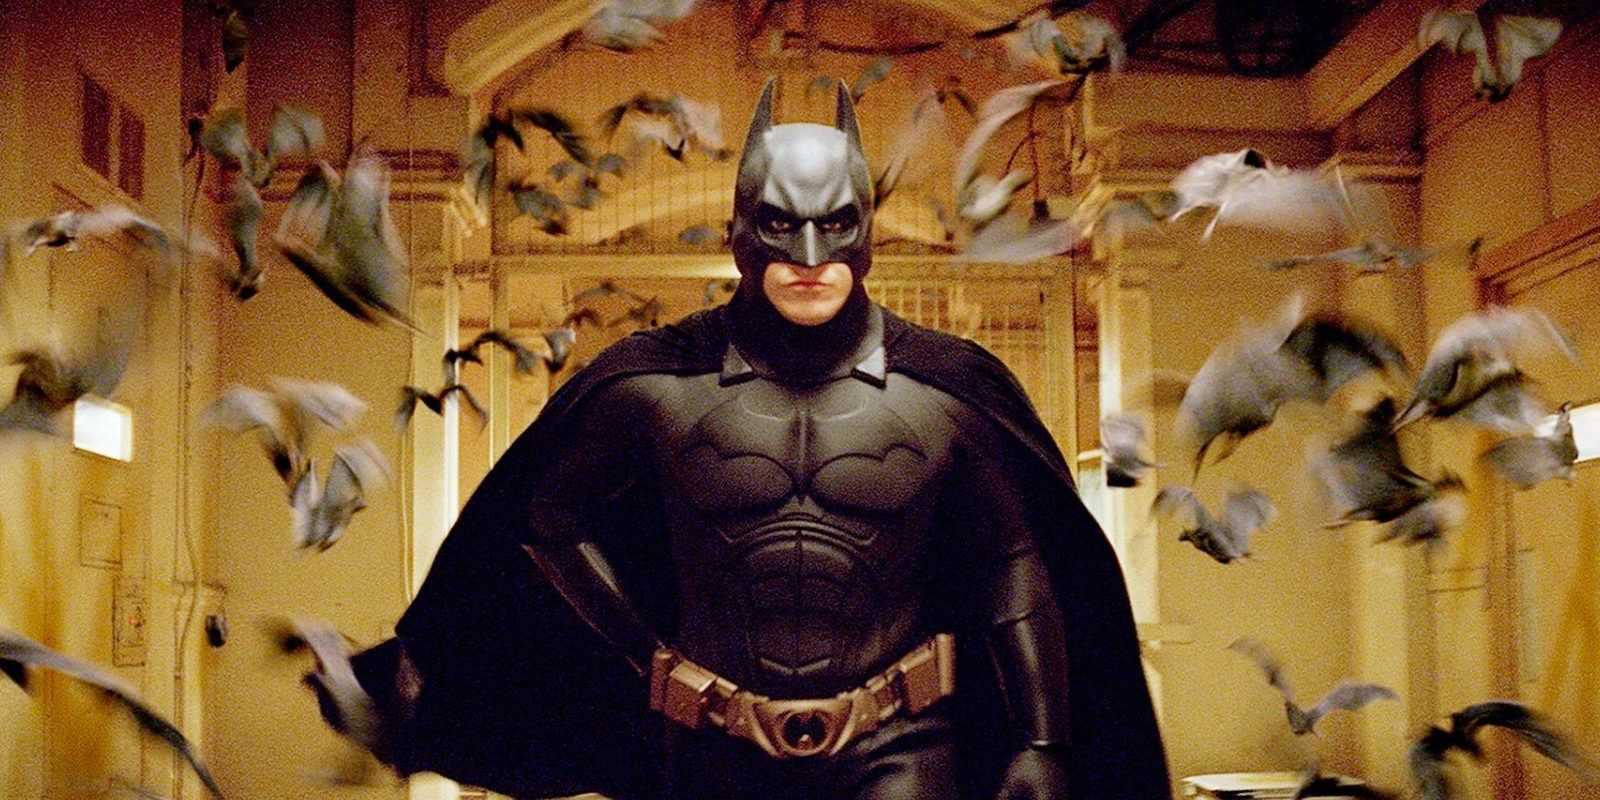 Batman surrounded by bats in Batman Begins